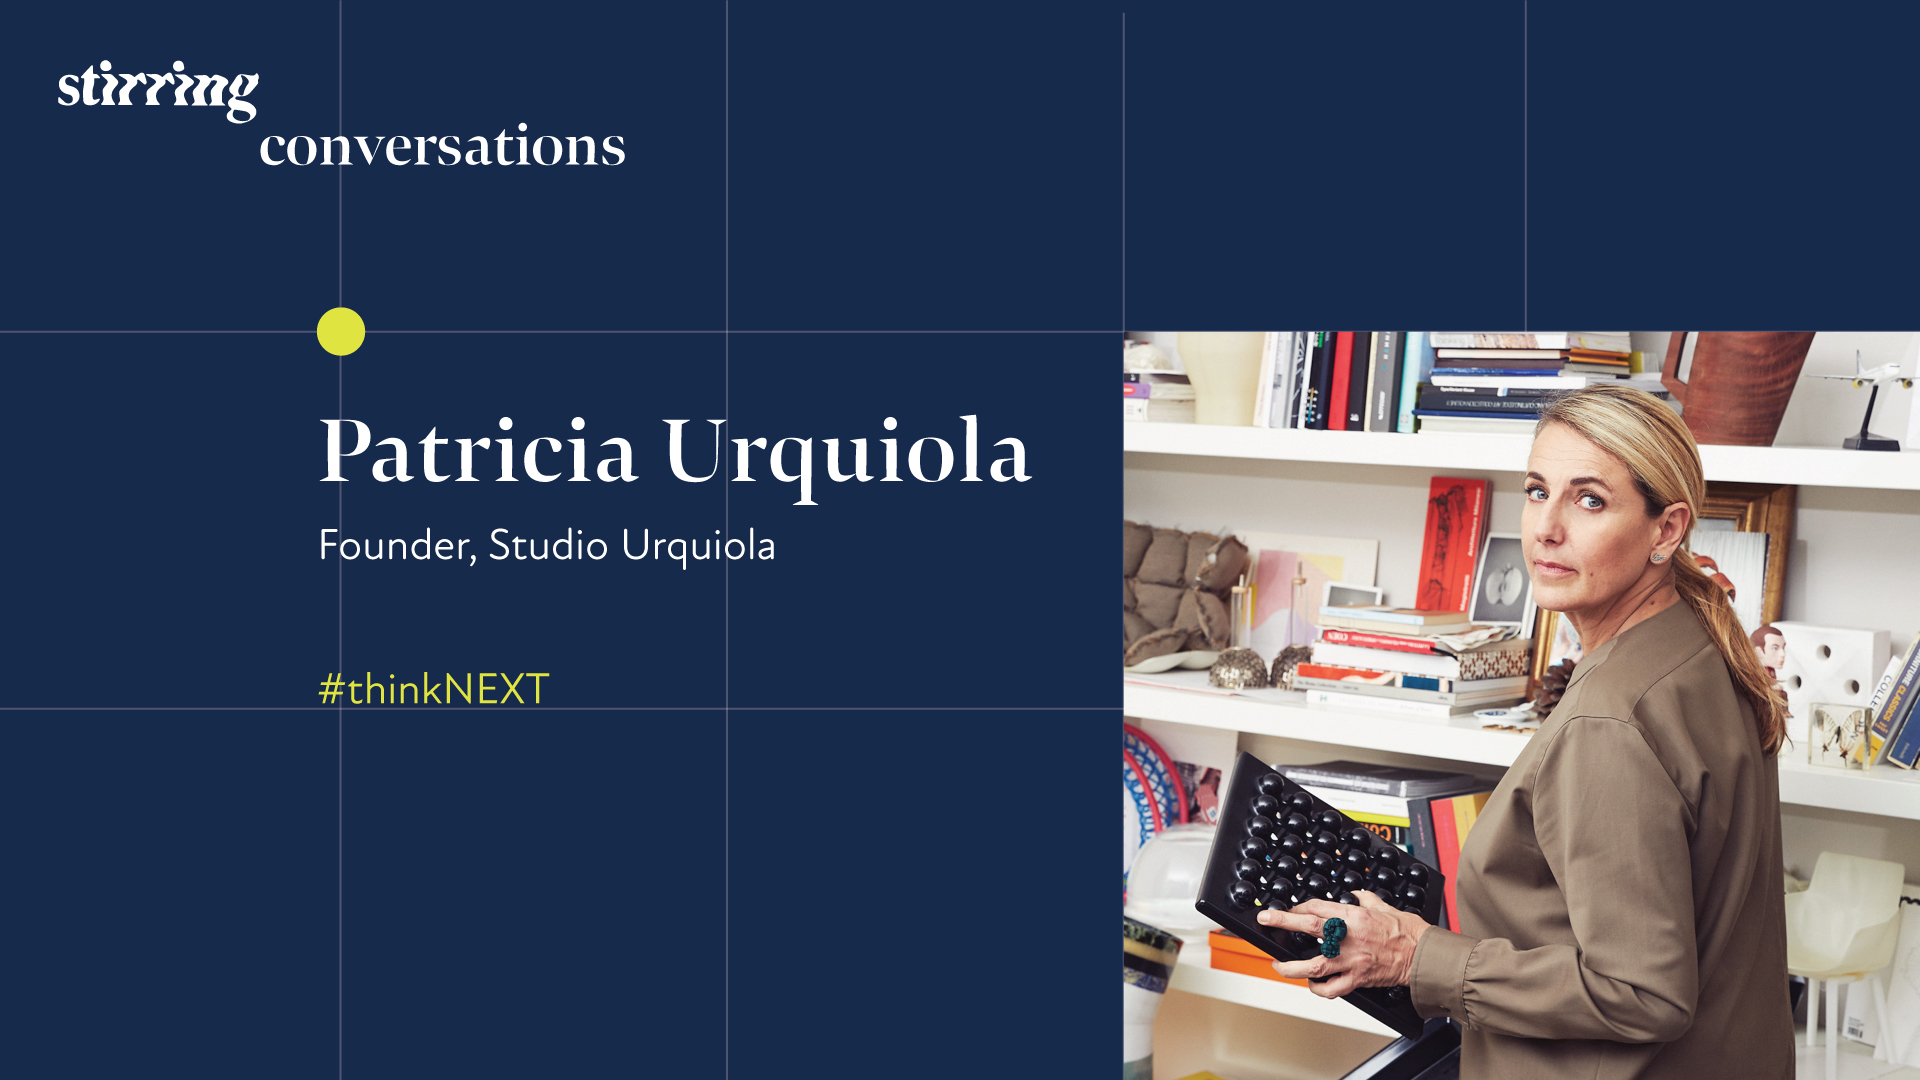 Patricia Urquiola: Between Craft and Industry